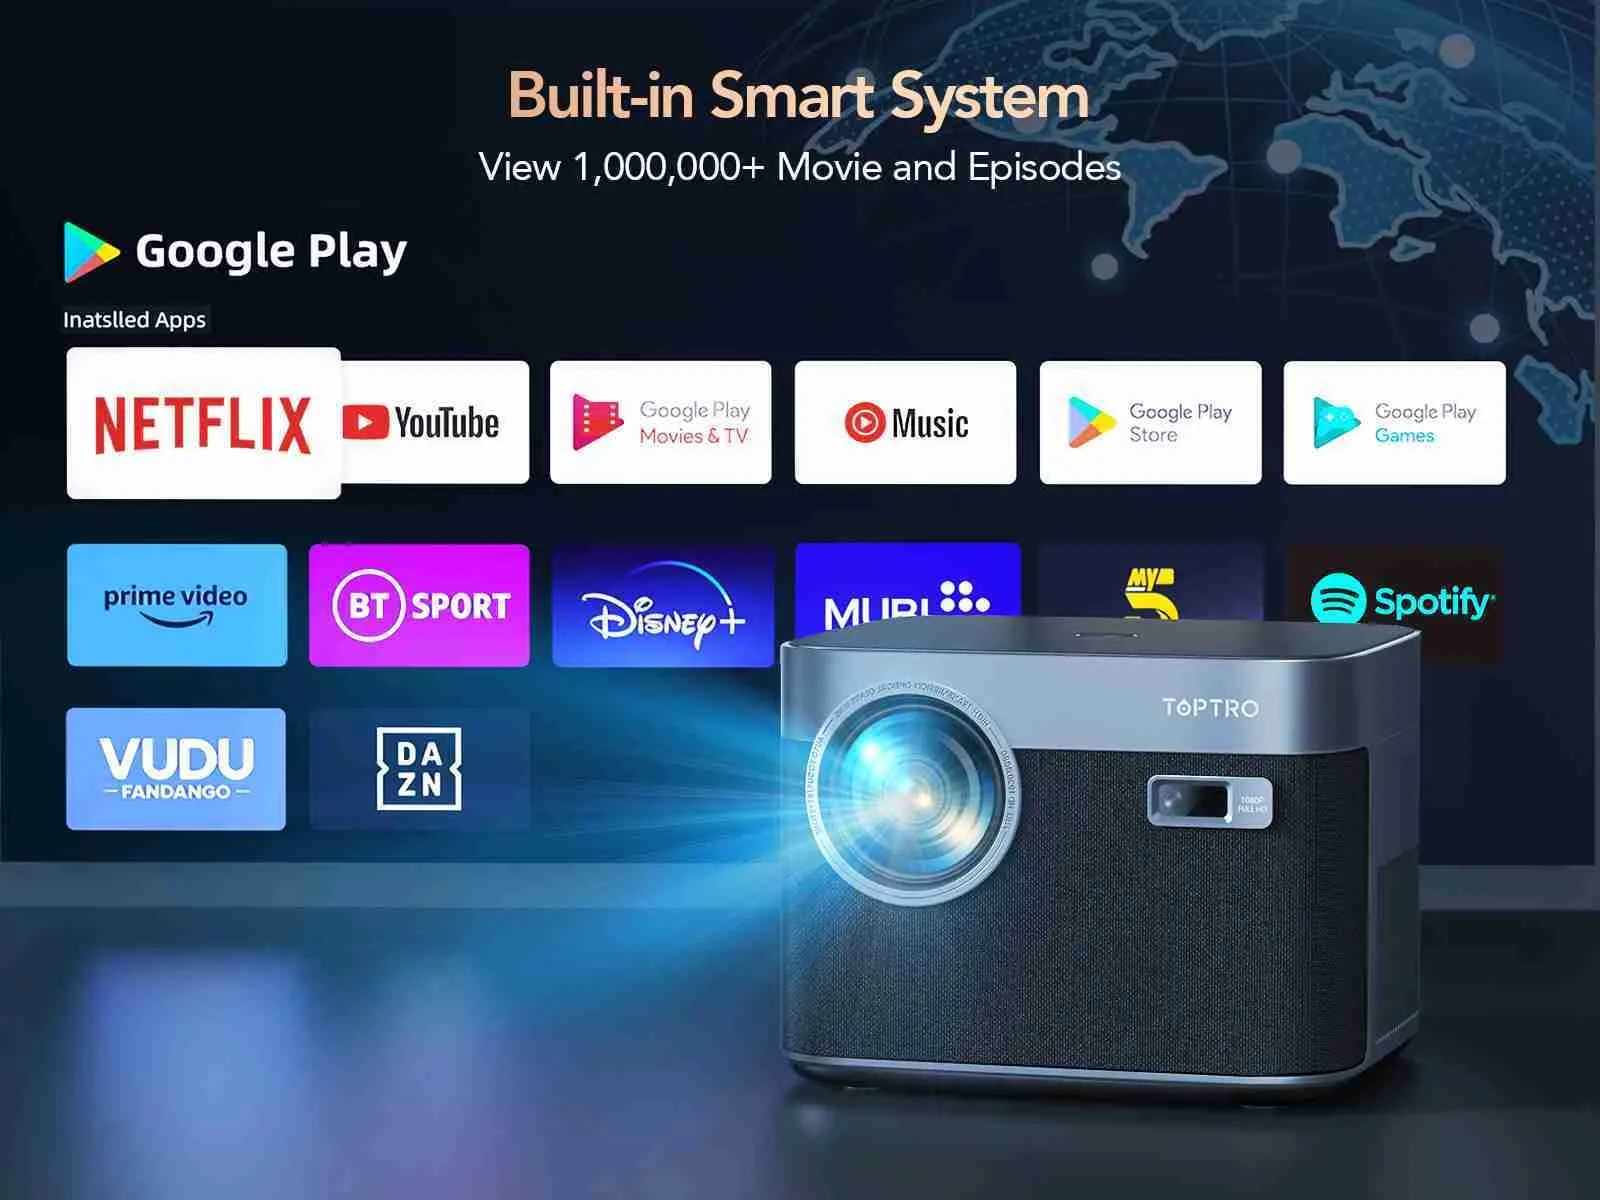 DITONG-proyector 4K con WiFi 6 y Bluetooth, Keystone automático